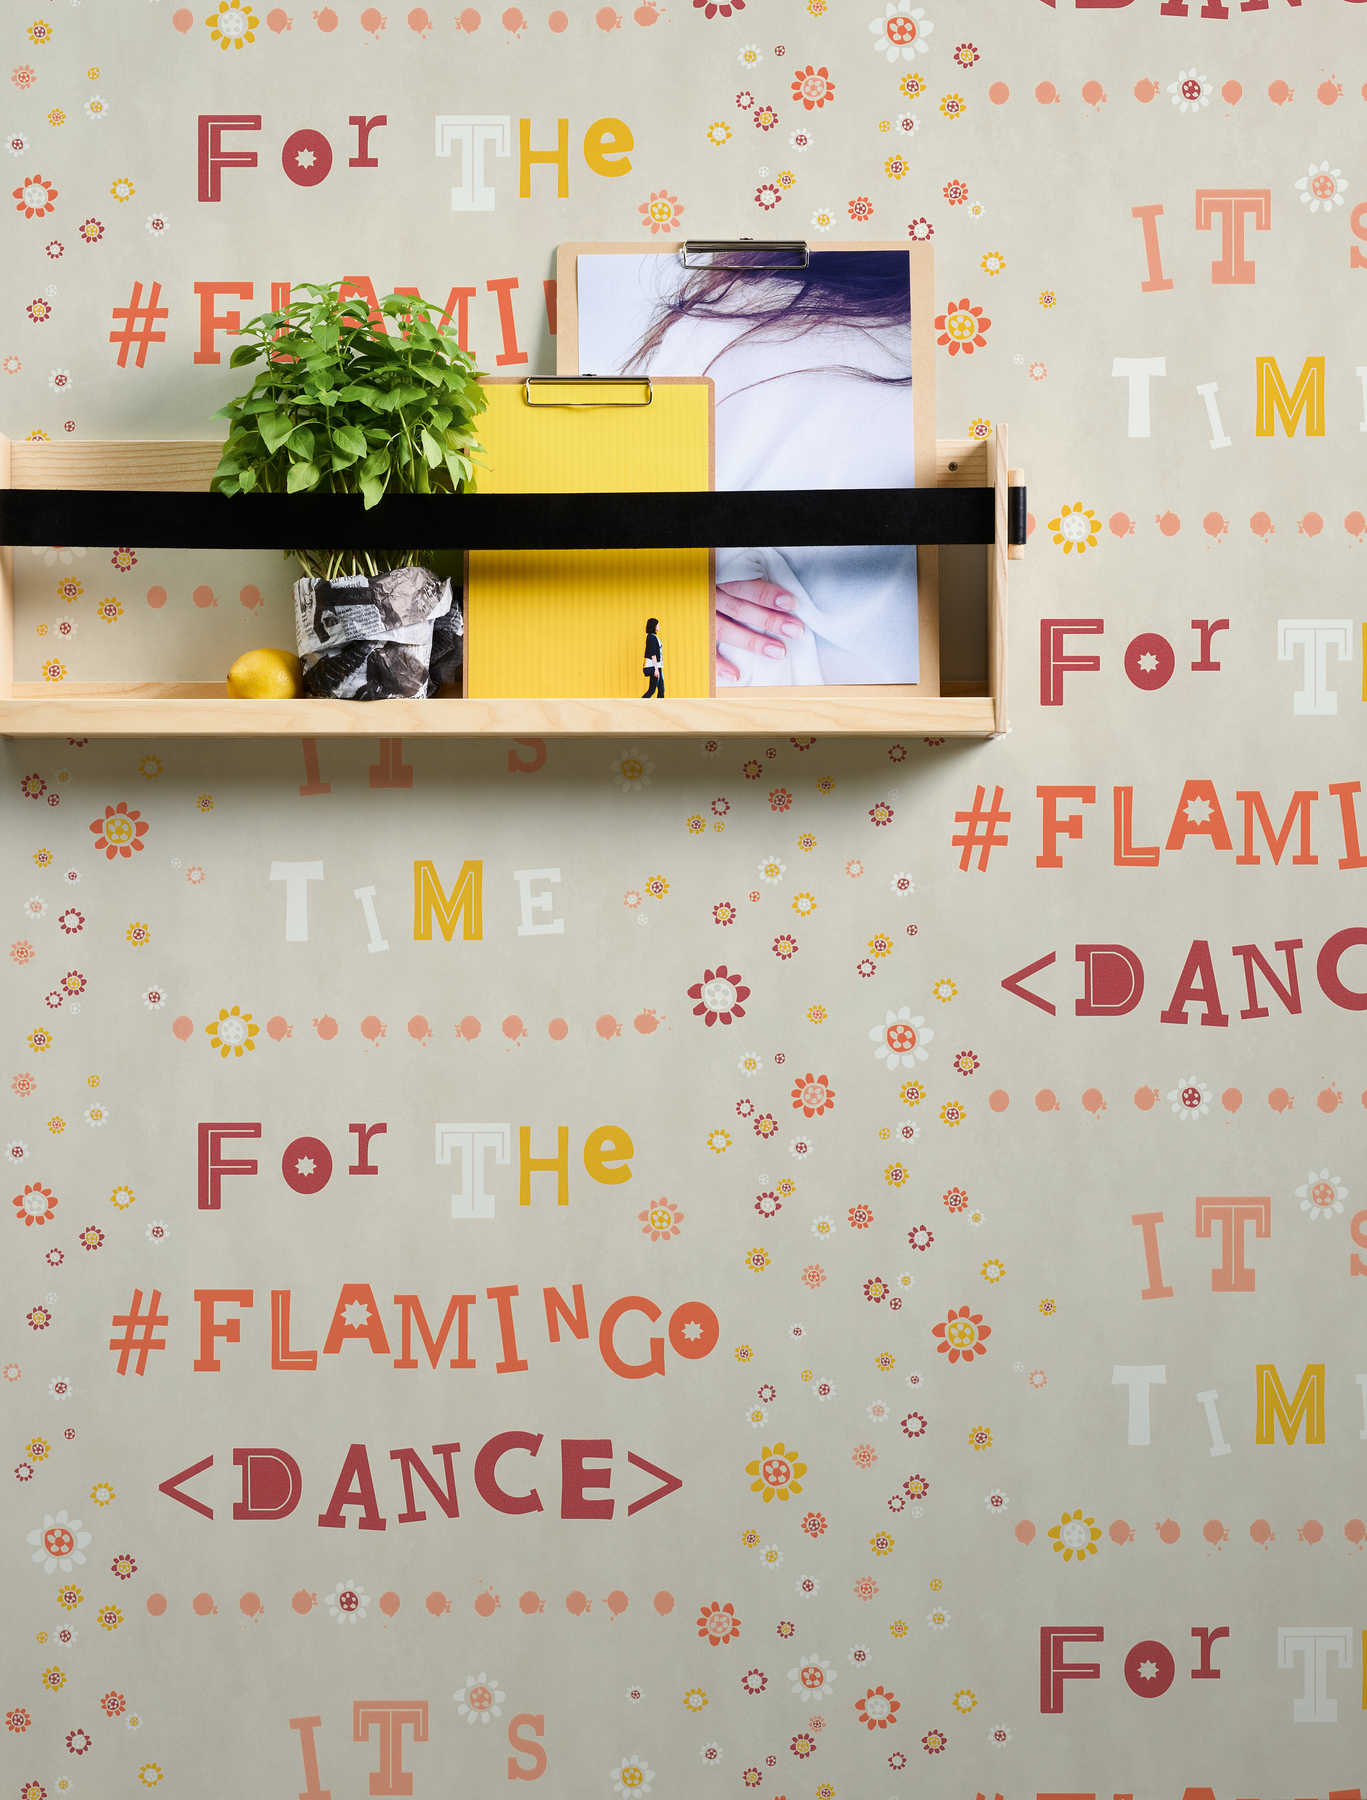             Vliesbehang flamingo & bloemen met letter design - beige, oranje
        